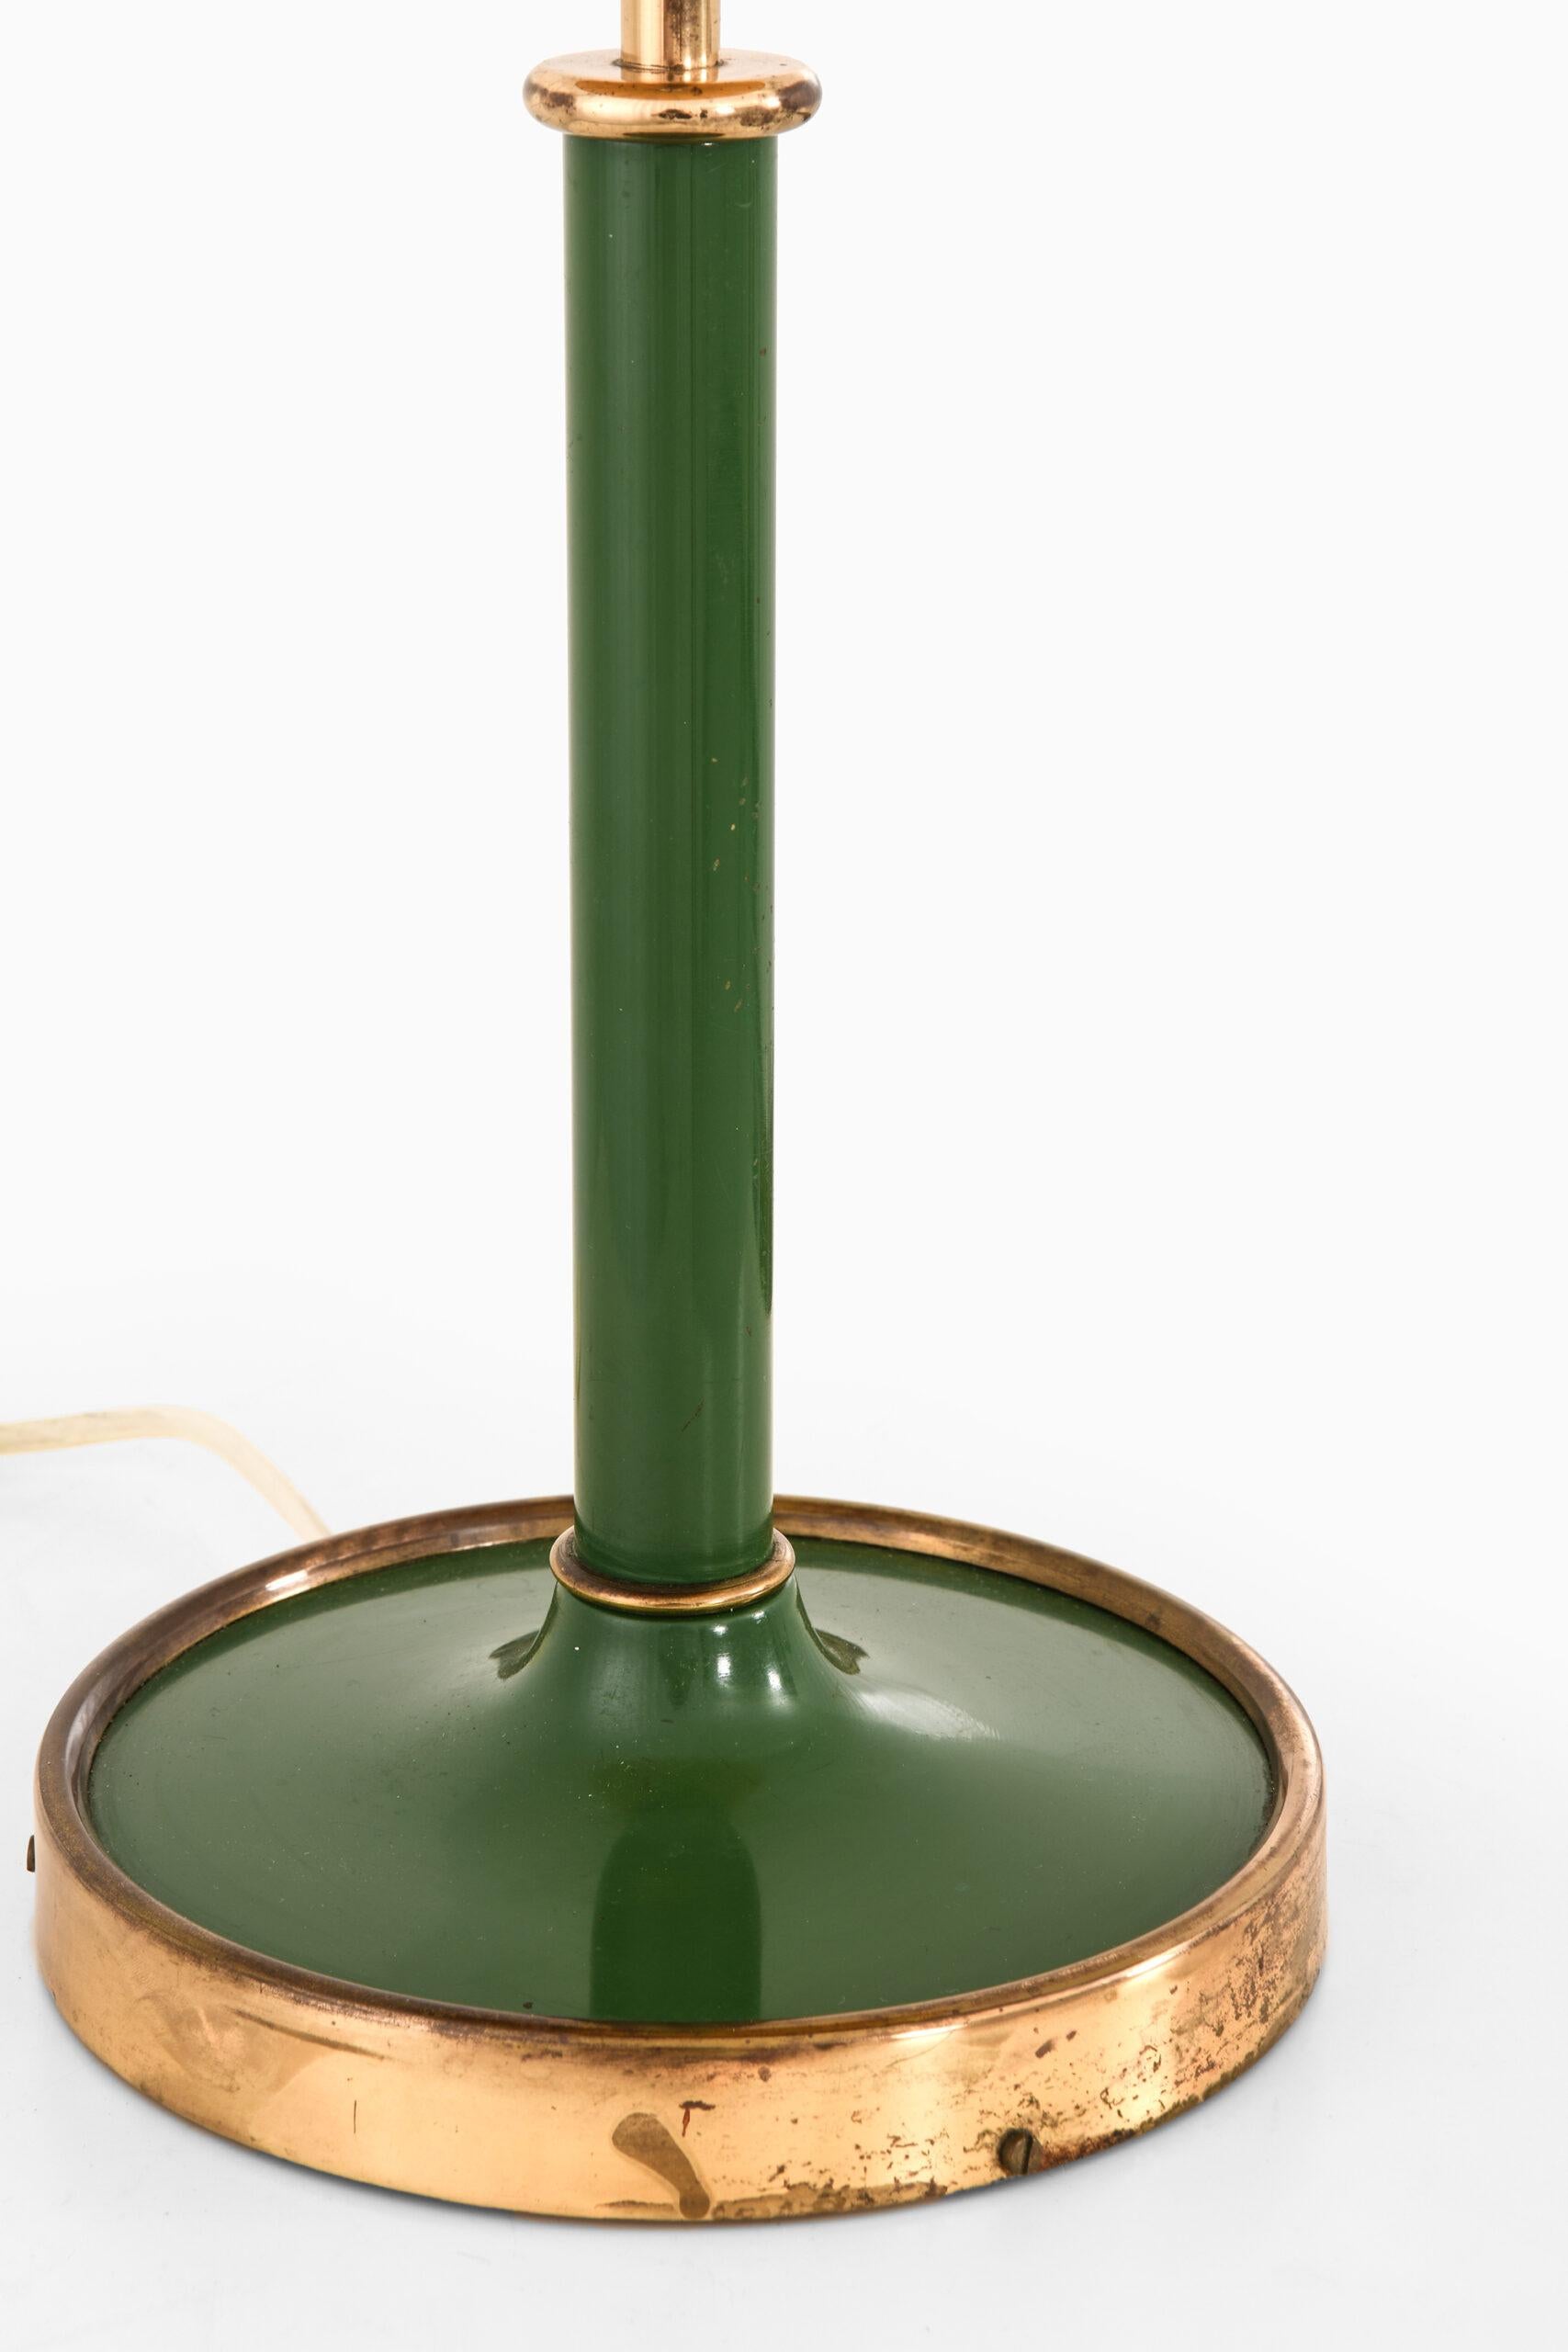 Scandinavian Modern Josef Frank Table Lamp Model G-2466 Produced by Svenskt Tenn For Sale